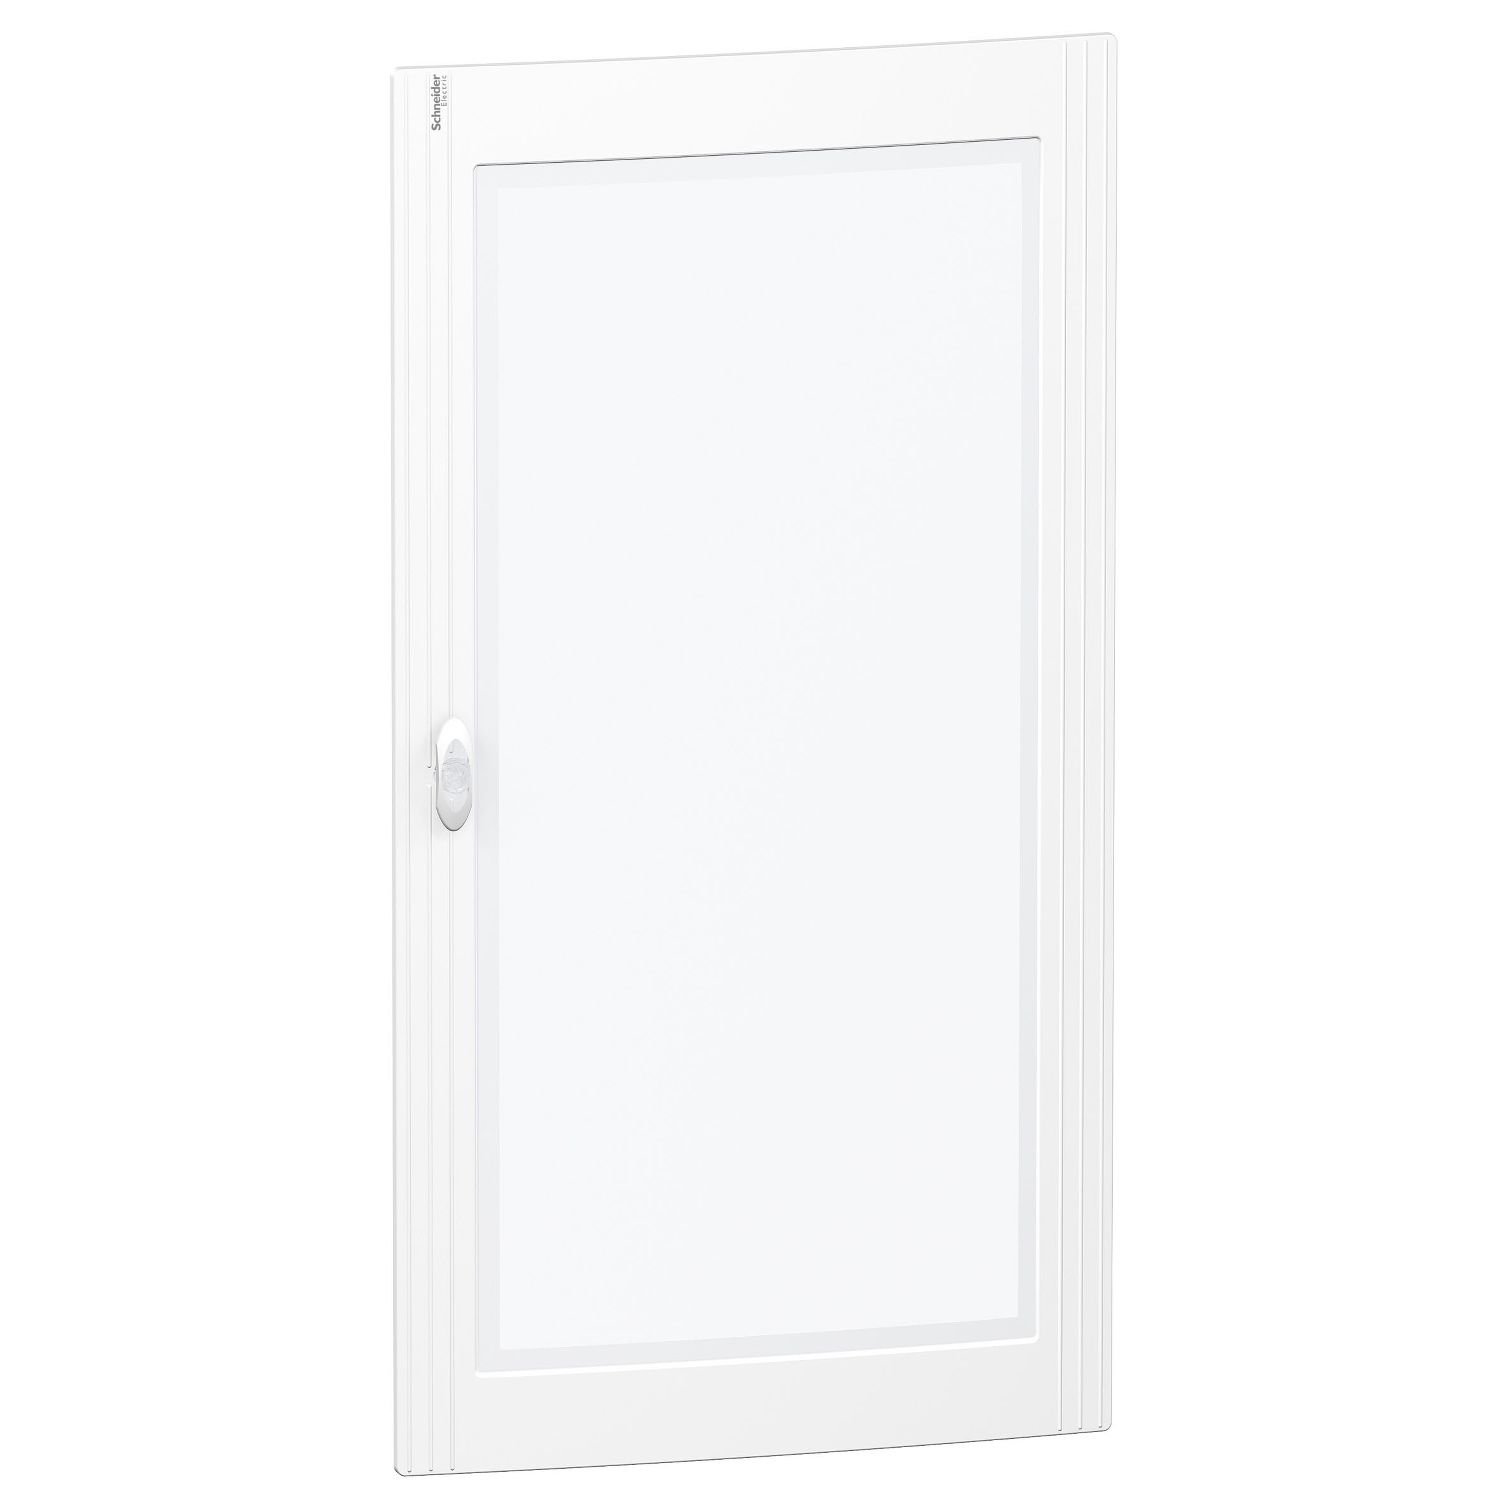 PRA15524 Pragma transparent door - for enclosure - 5 x 24 modules